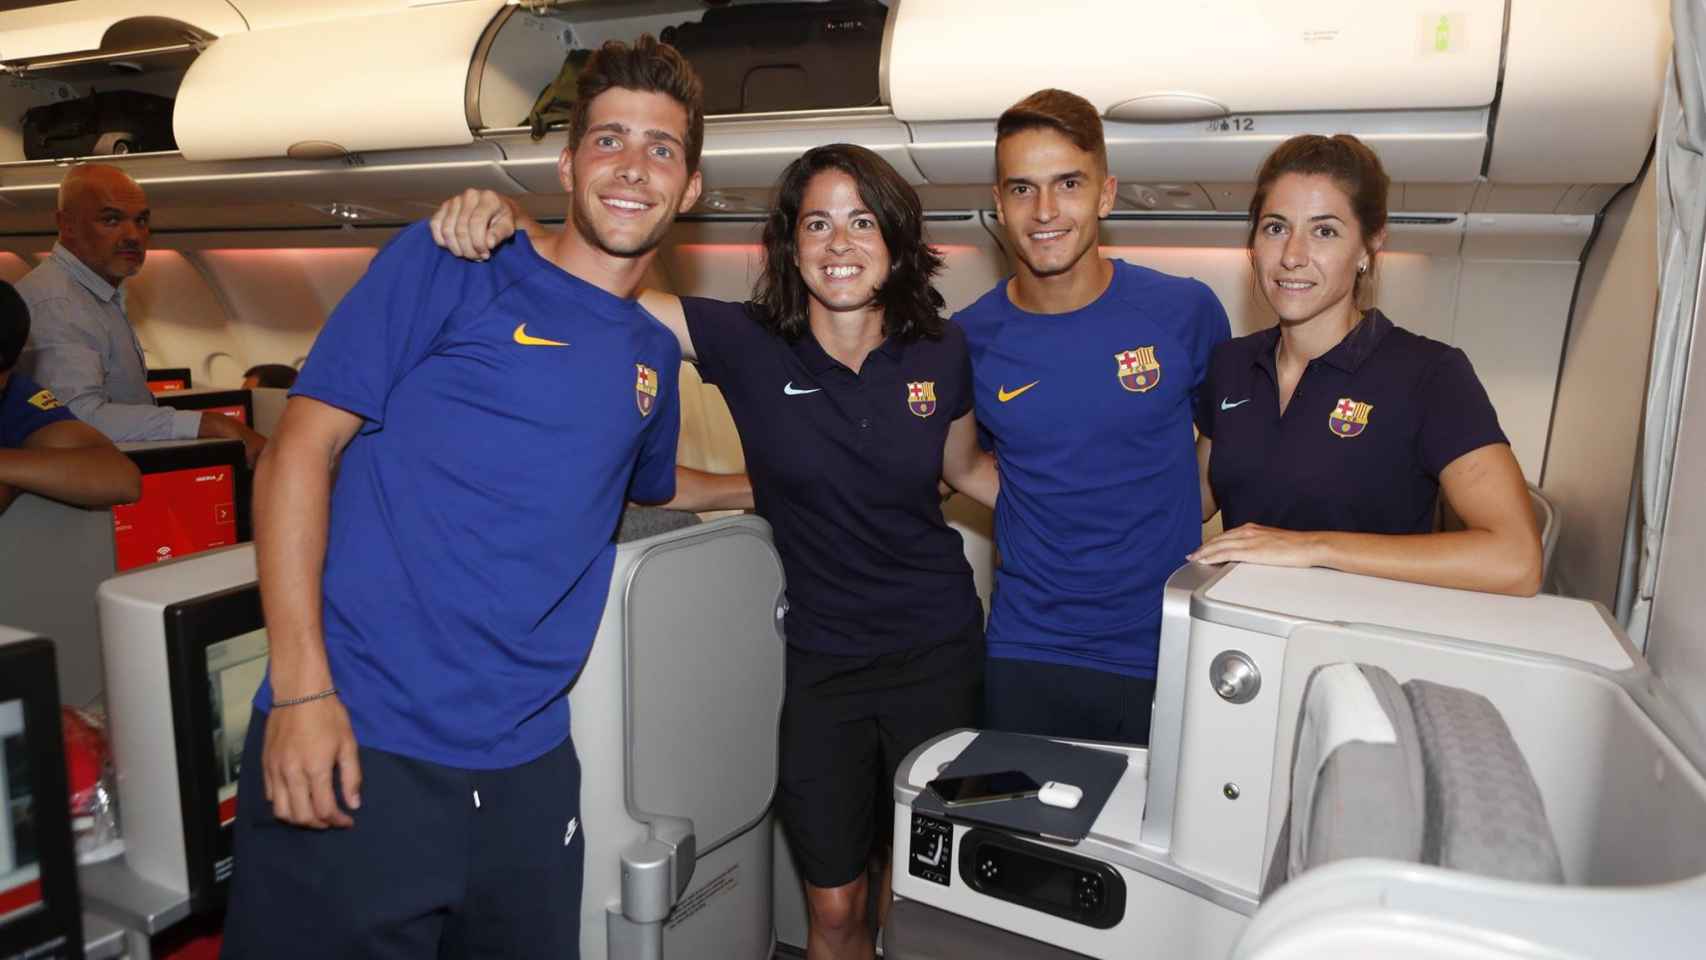 Un paso atrás del Barça, un triunfo del fútbol femenino